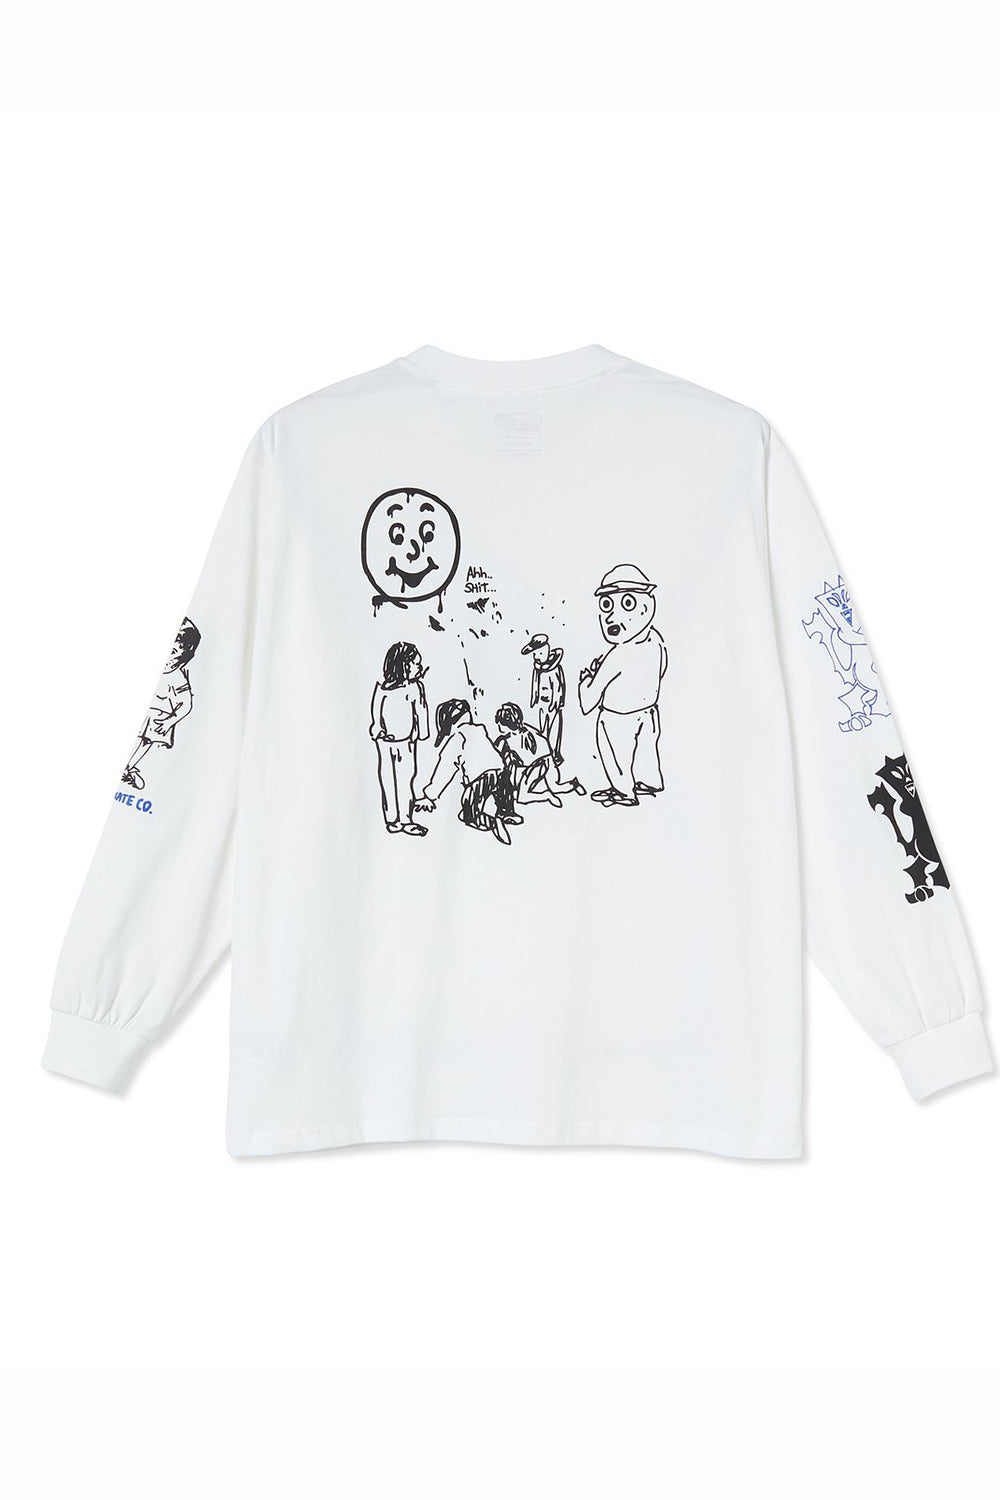 Shop Polar Skate Co | Polar Skate Co Year 2020 Longsleeve T-Shirt